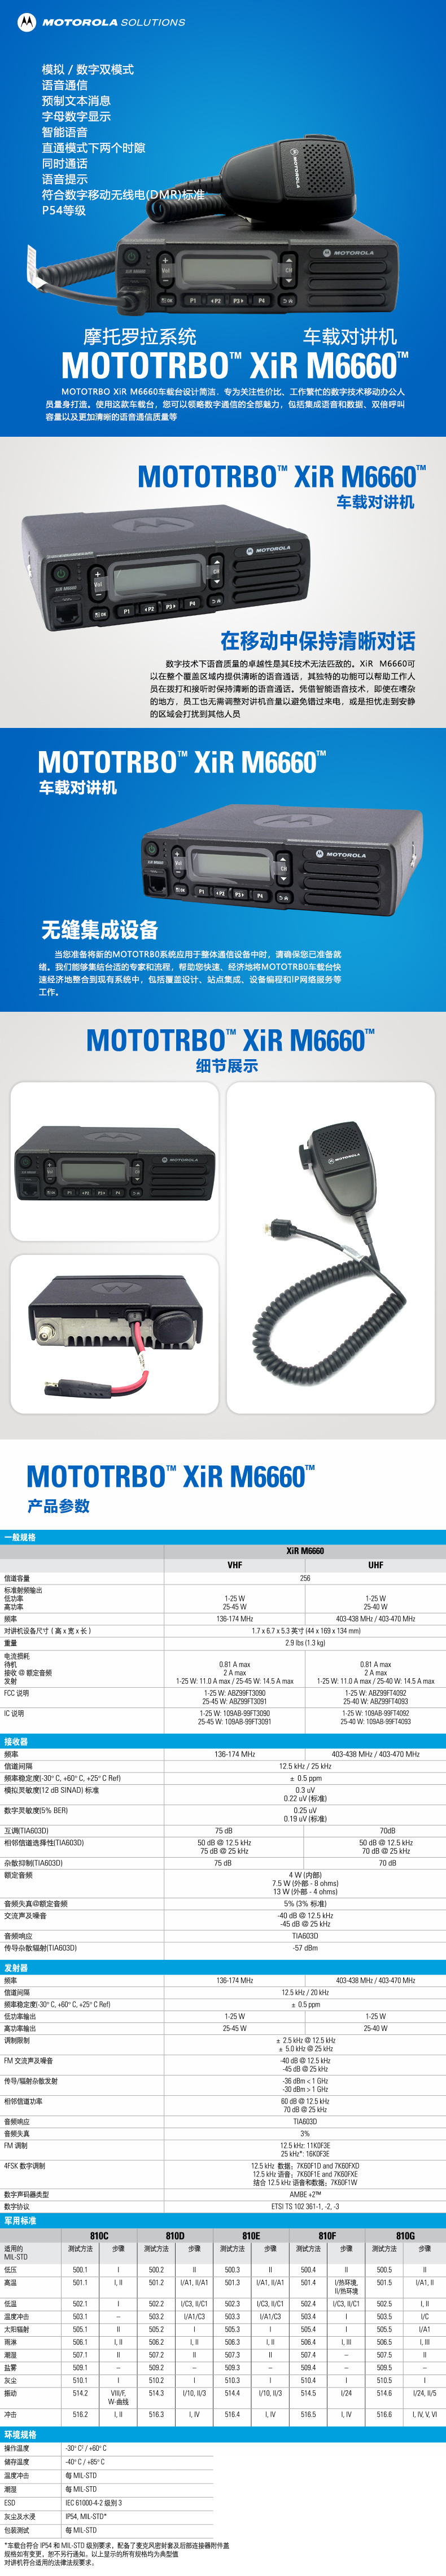 XIR-M6660.jpg